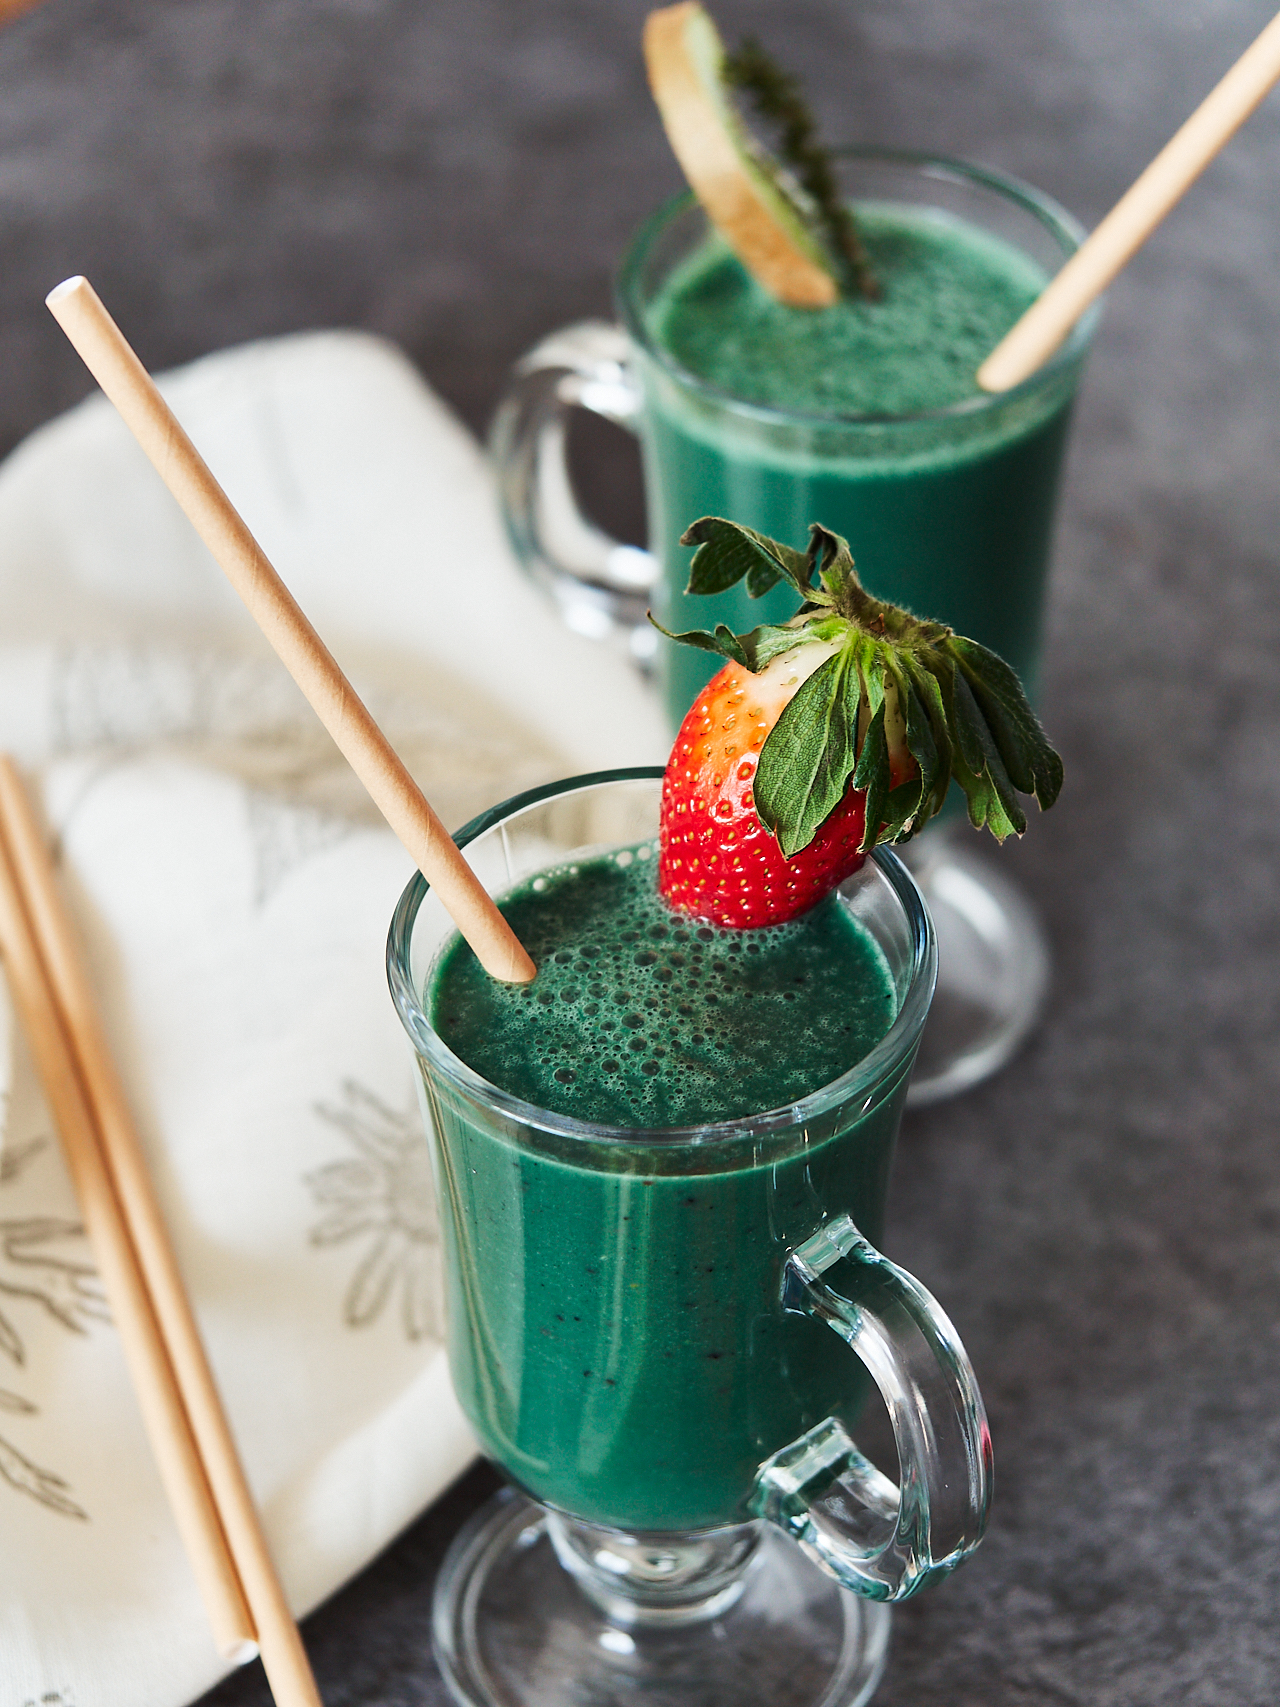 Viool spuiten halsband The Best Green Spirulina Smoothie - Delice Recipes